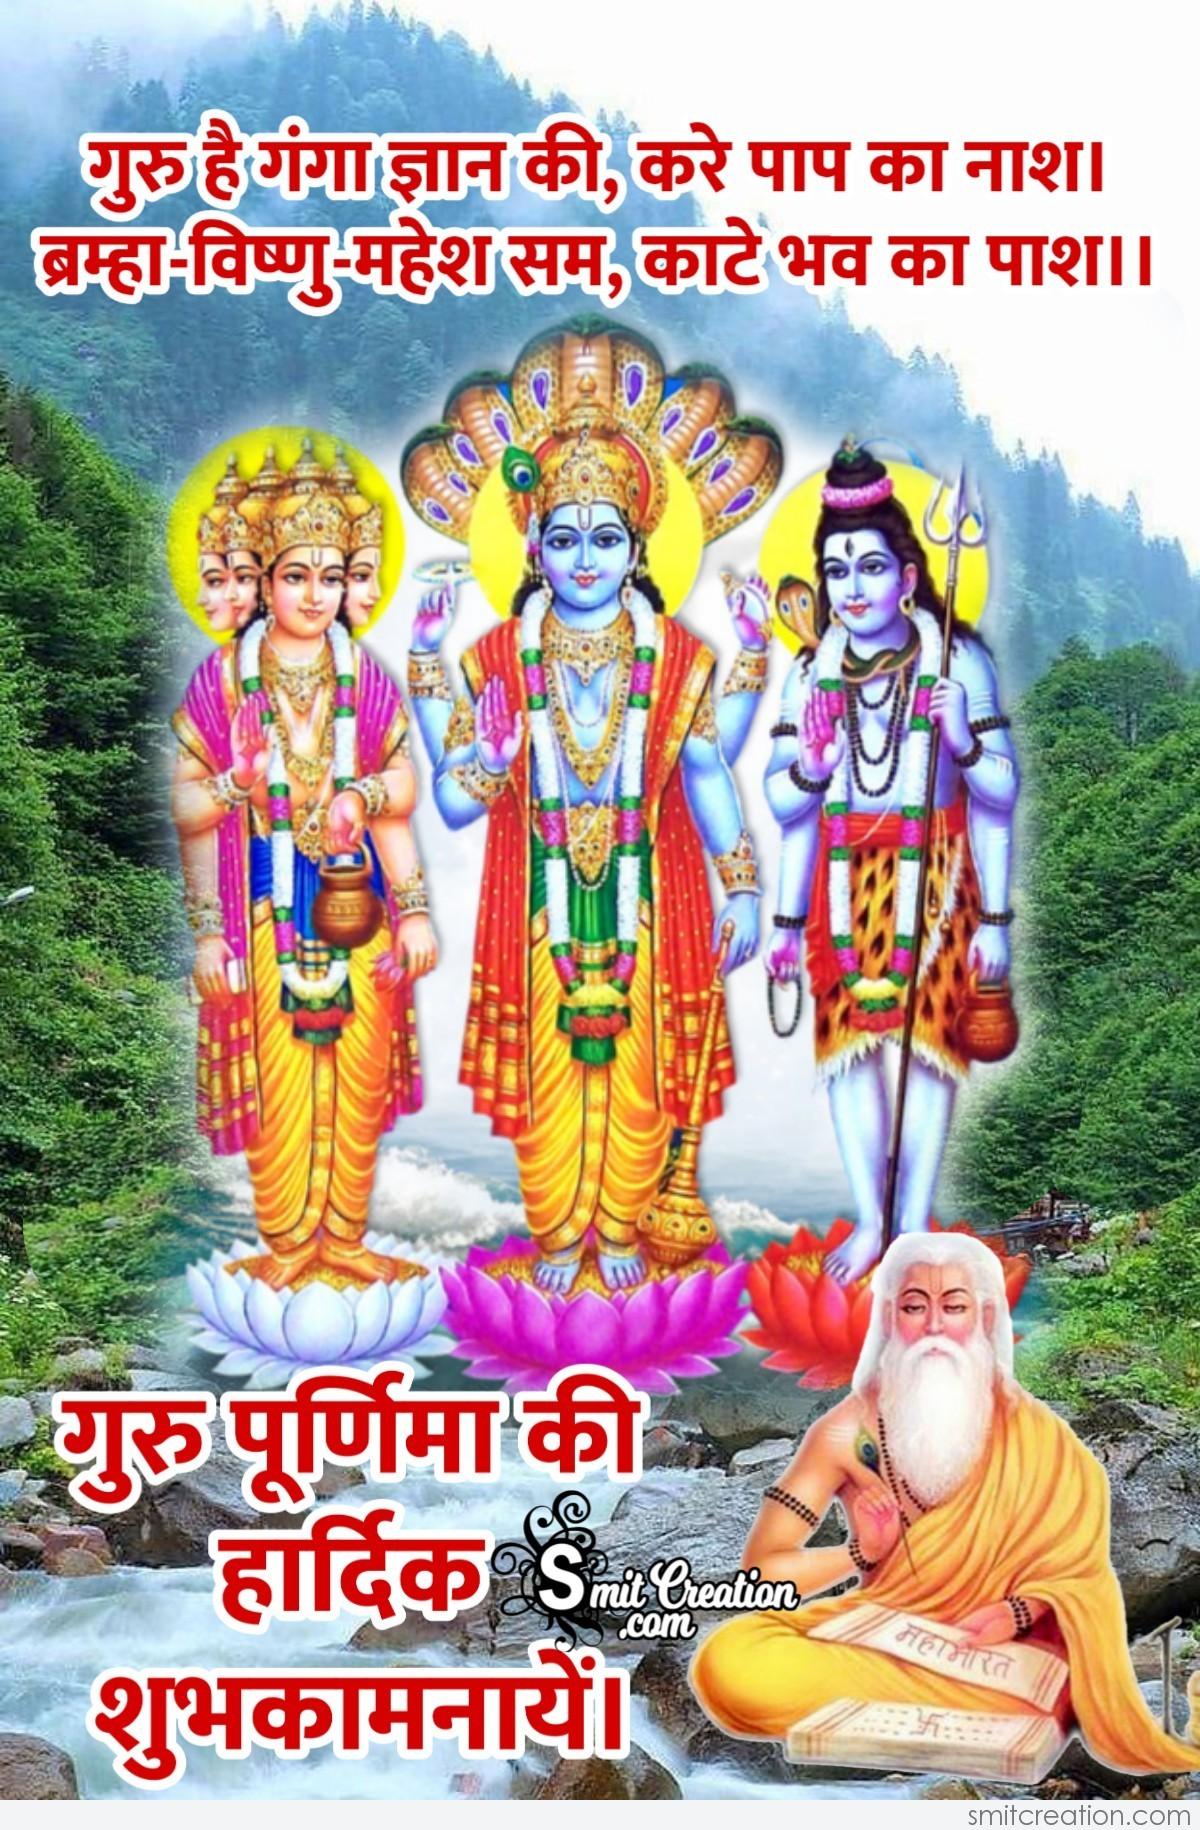 Guru Purnima Ki Hardik shubhkamnaye 